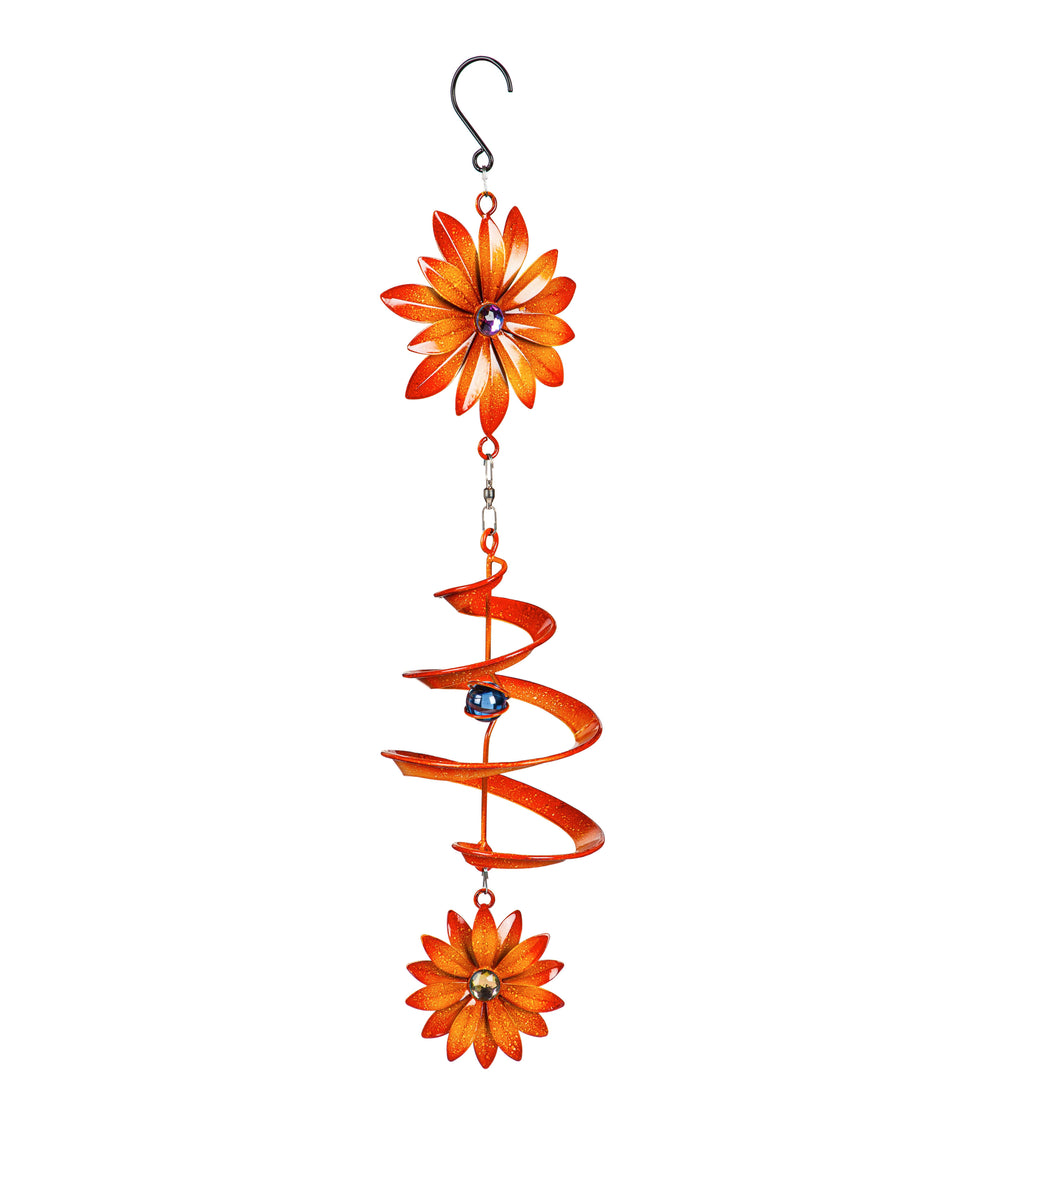 Hanging Wind Twirler, Orange Flower, 20.75in